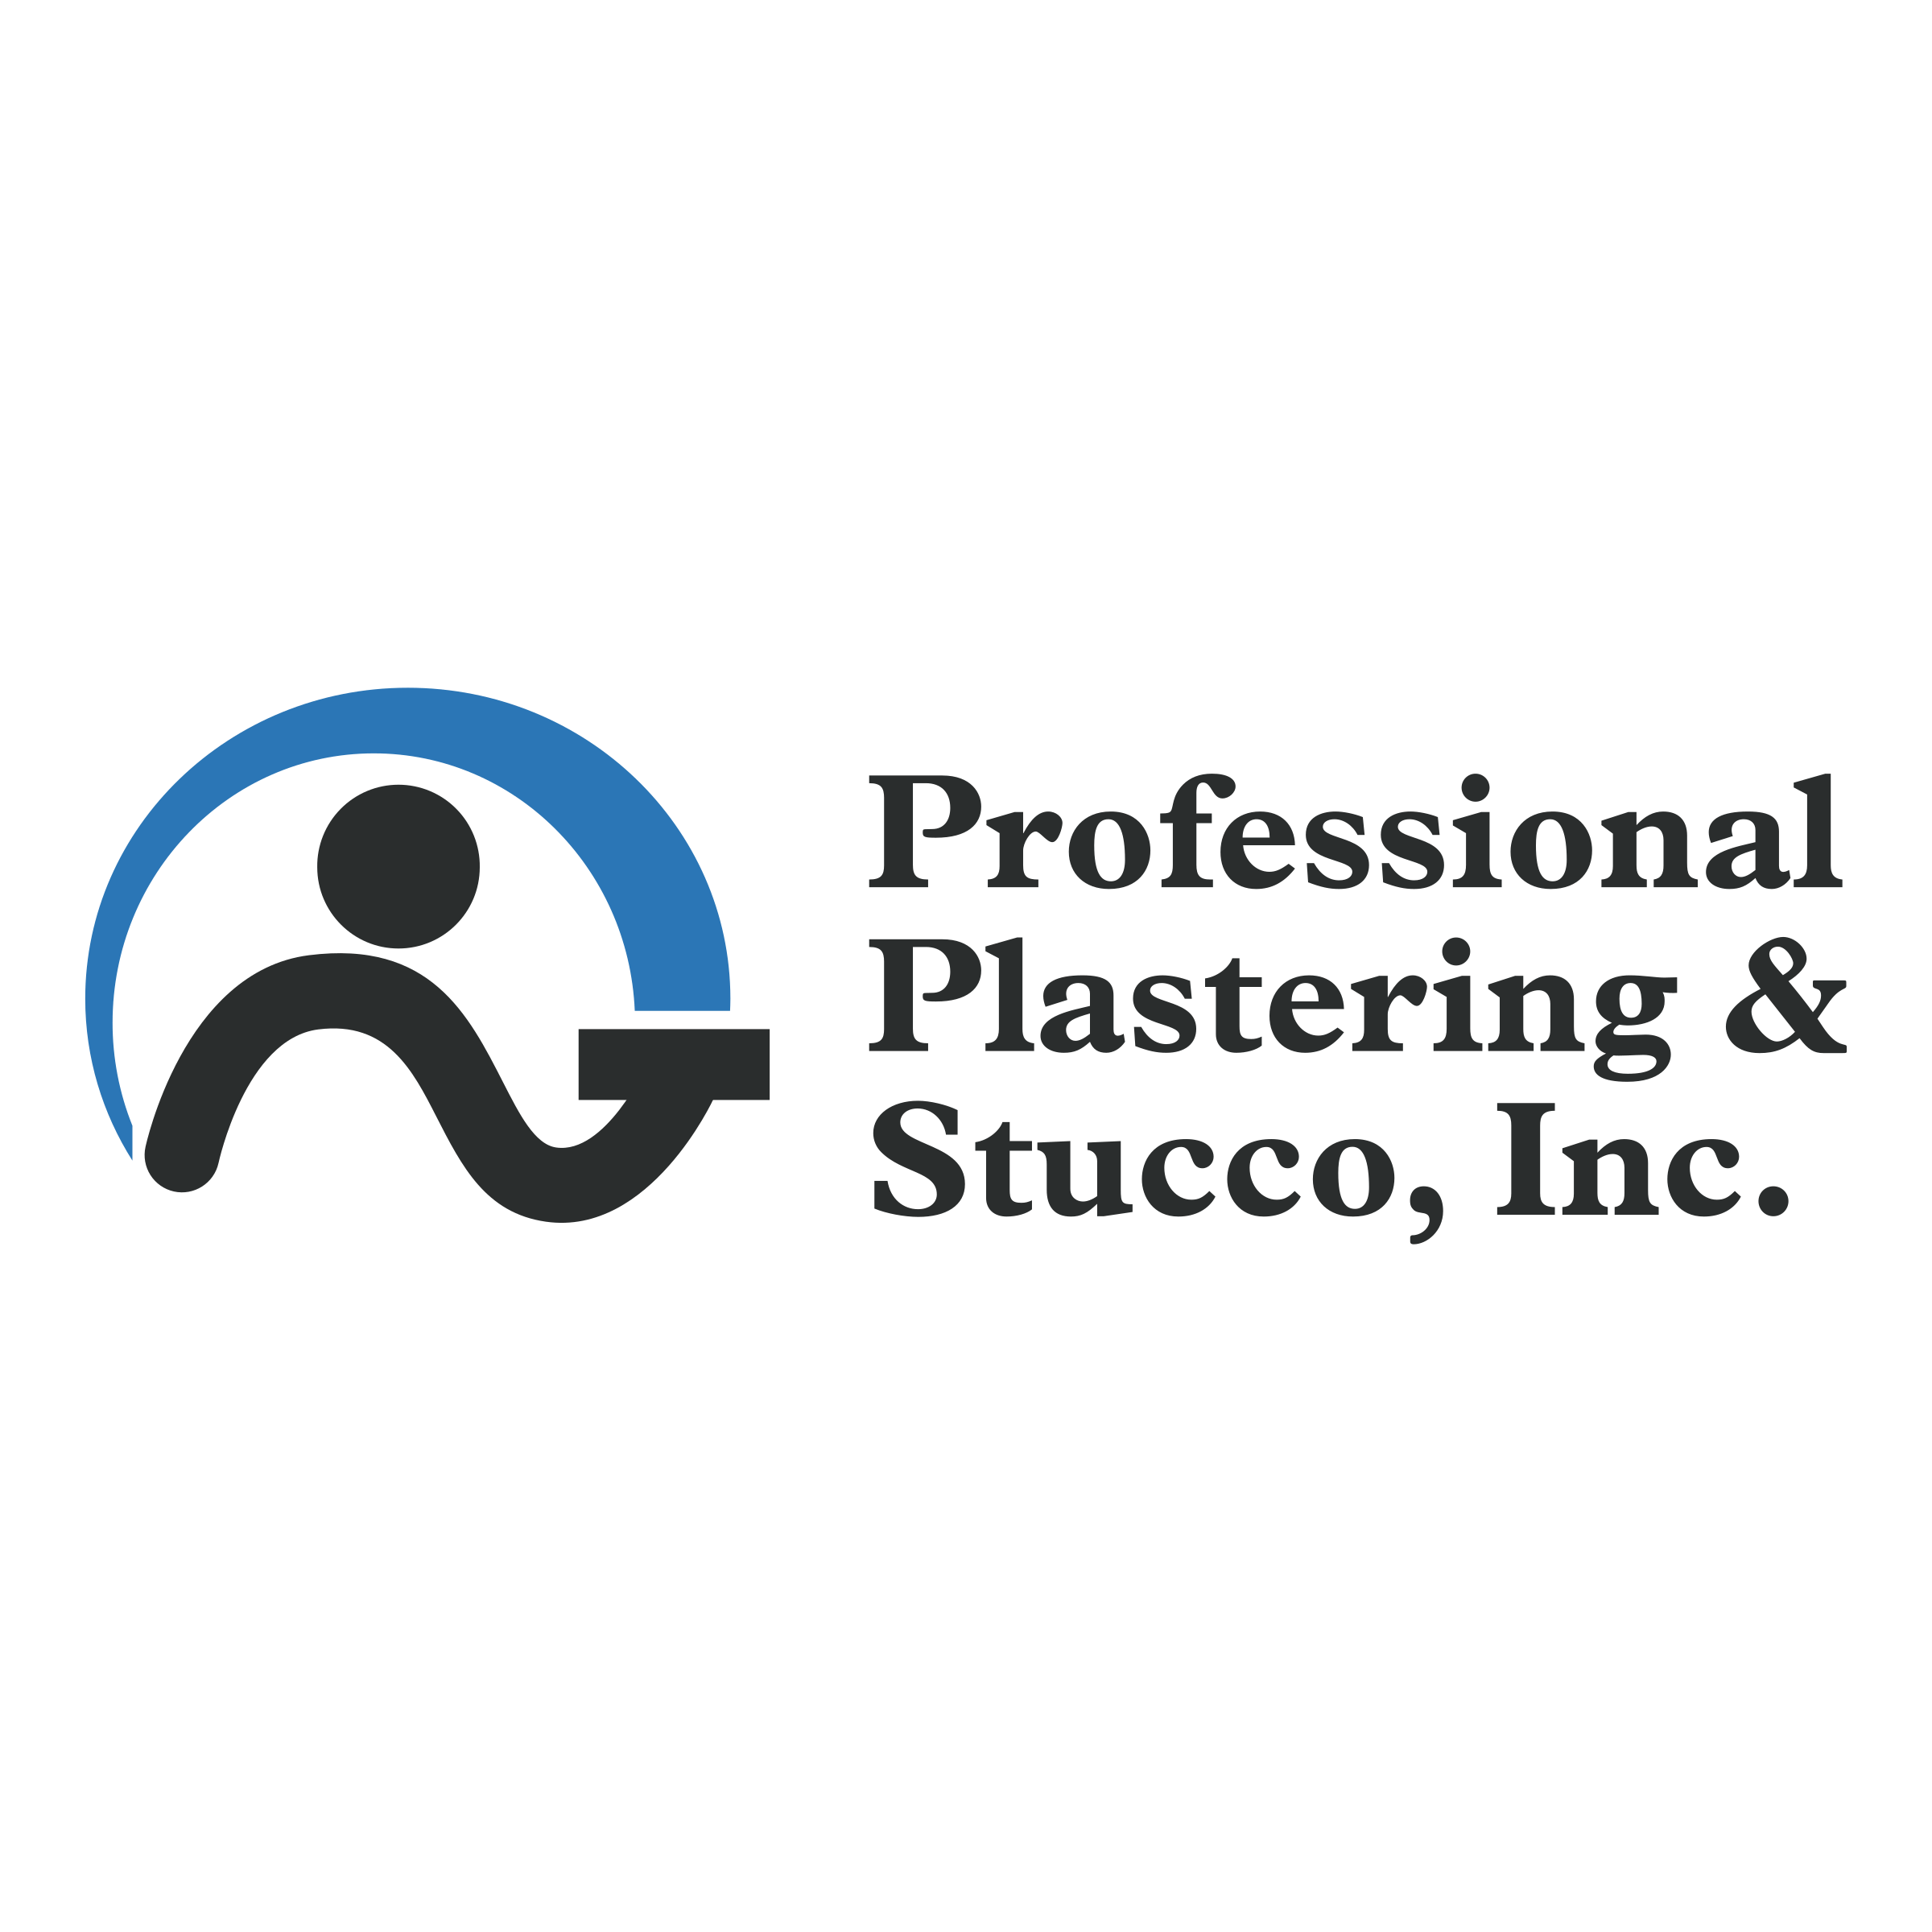 Plastering Logo - Professional Plastering & Stucco Logo PNG Transparent & SVG Vector ...